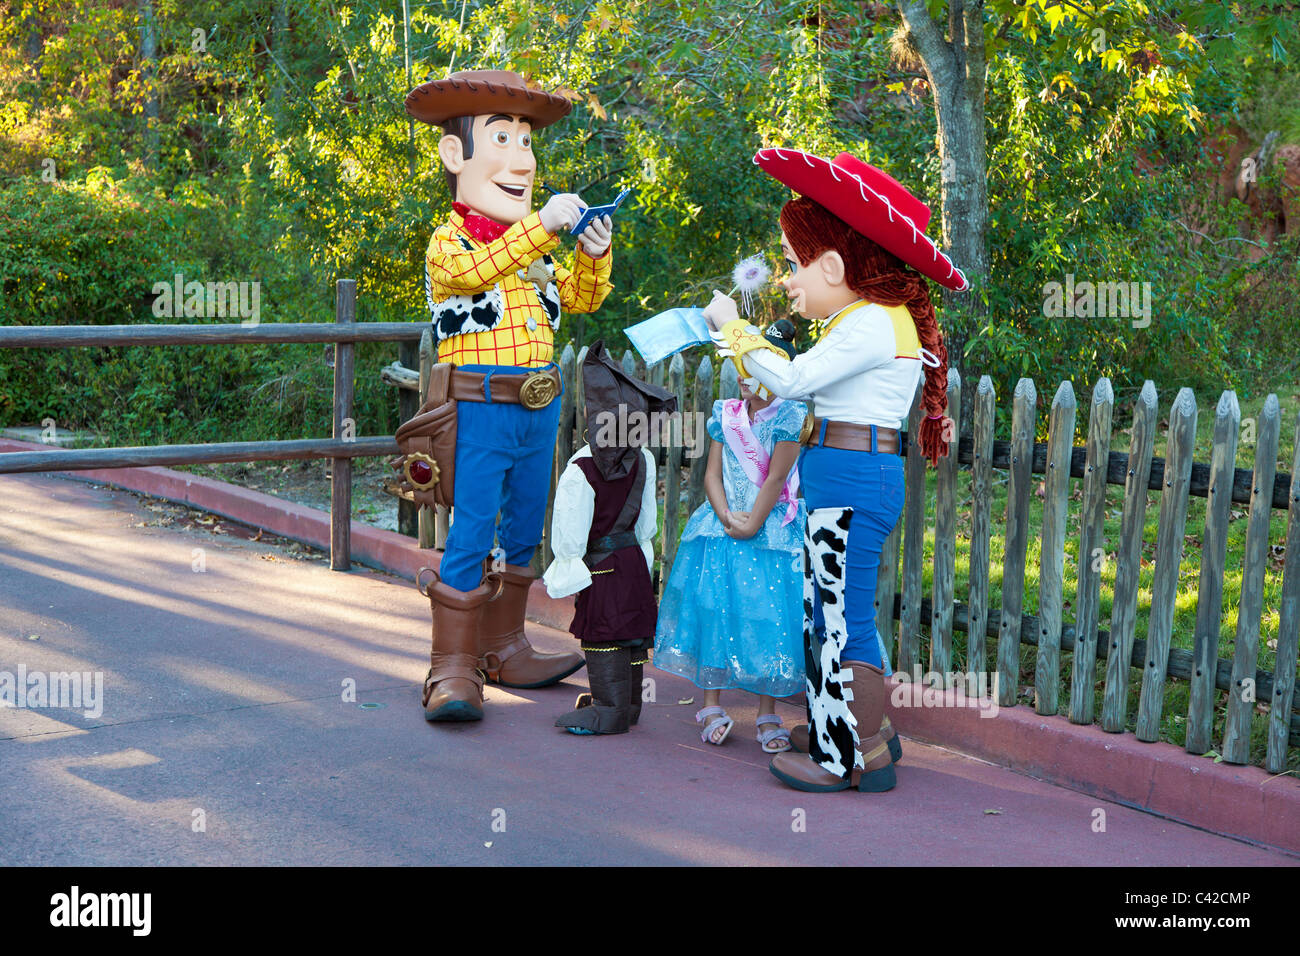 Personajes de Toy Story Woody y Jessie firmar autógrafos para los niños pequeños en el Reino Mágico de Disney World, Kissimmee, Florida Foto de stock